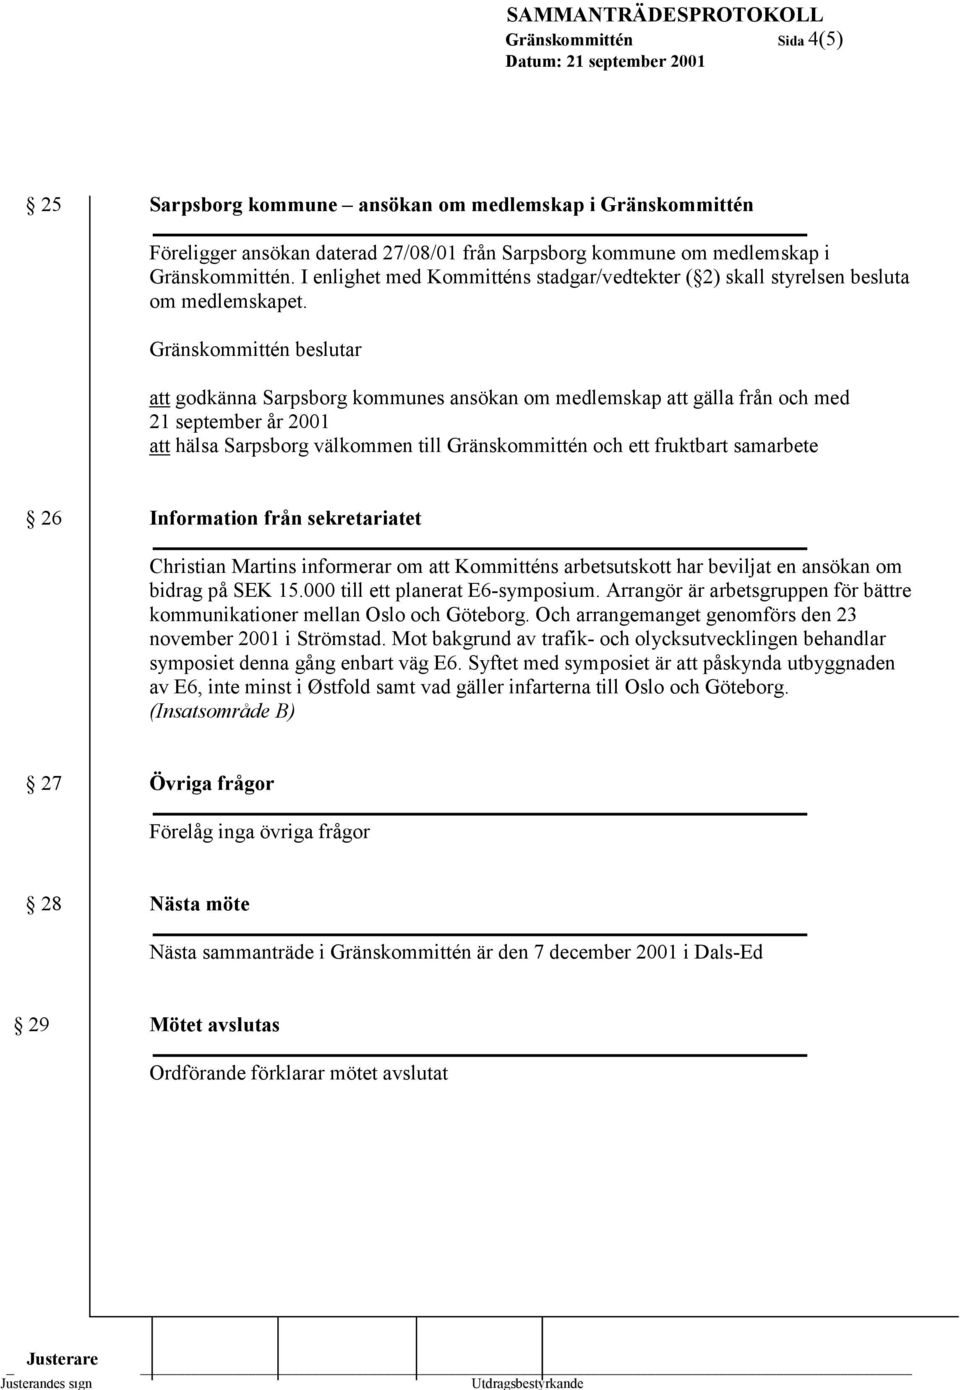 Gränskommittén beslutar att godkänna Sarpsborg kommunes ansökan om medlemskap att gälla från och med 21 september år 2001 att hälsa Sarpsborg välkommen till Gränskommittén och ett fruktbart samarbete